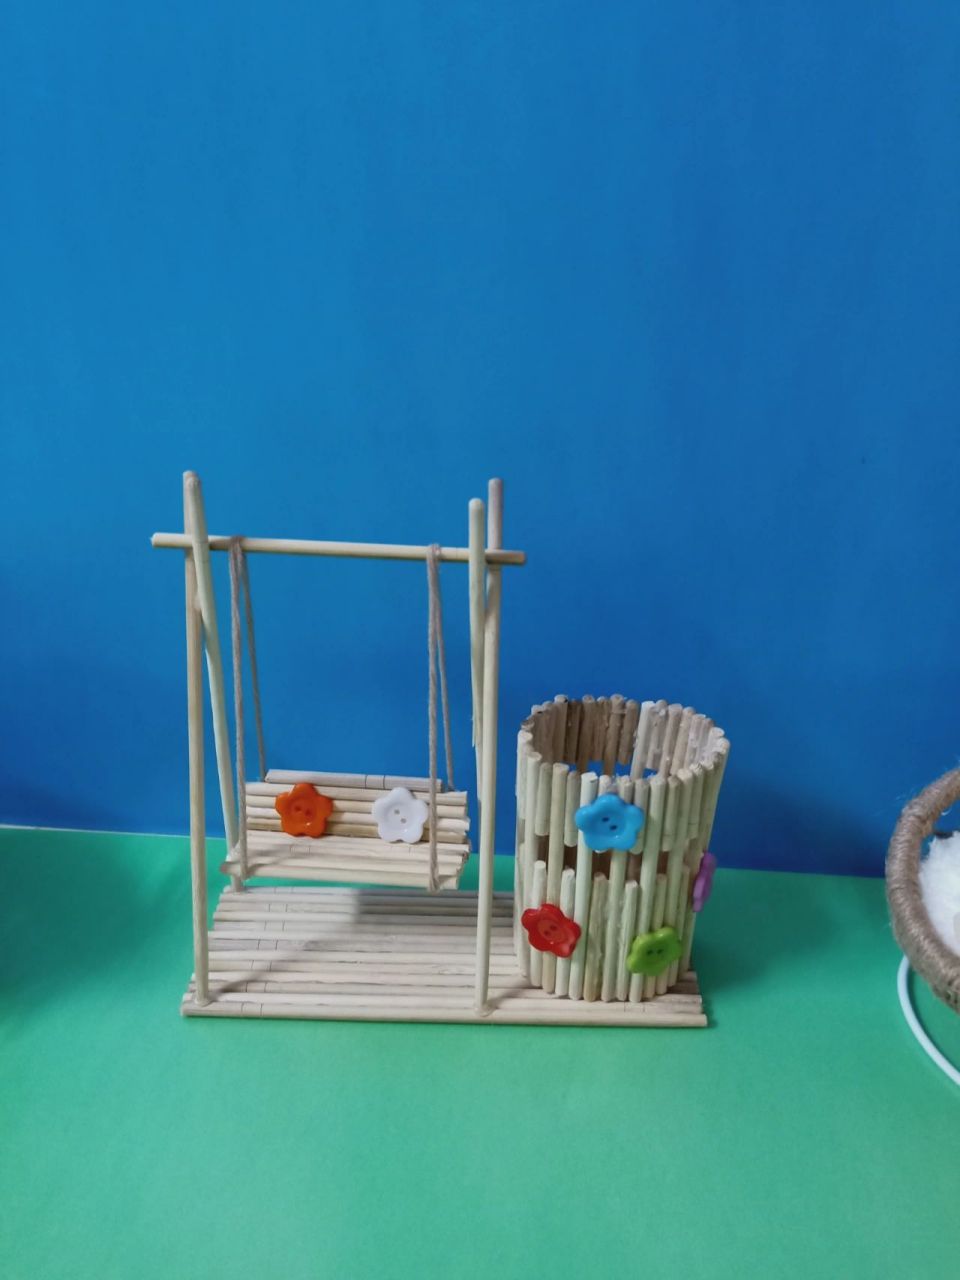 一次性筷子手工作品 幼儿园搞竹之风活动,姐姐让帮忙用竹子做个小物件